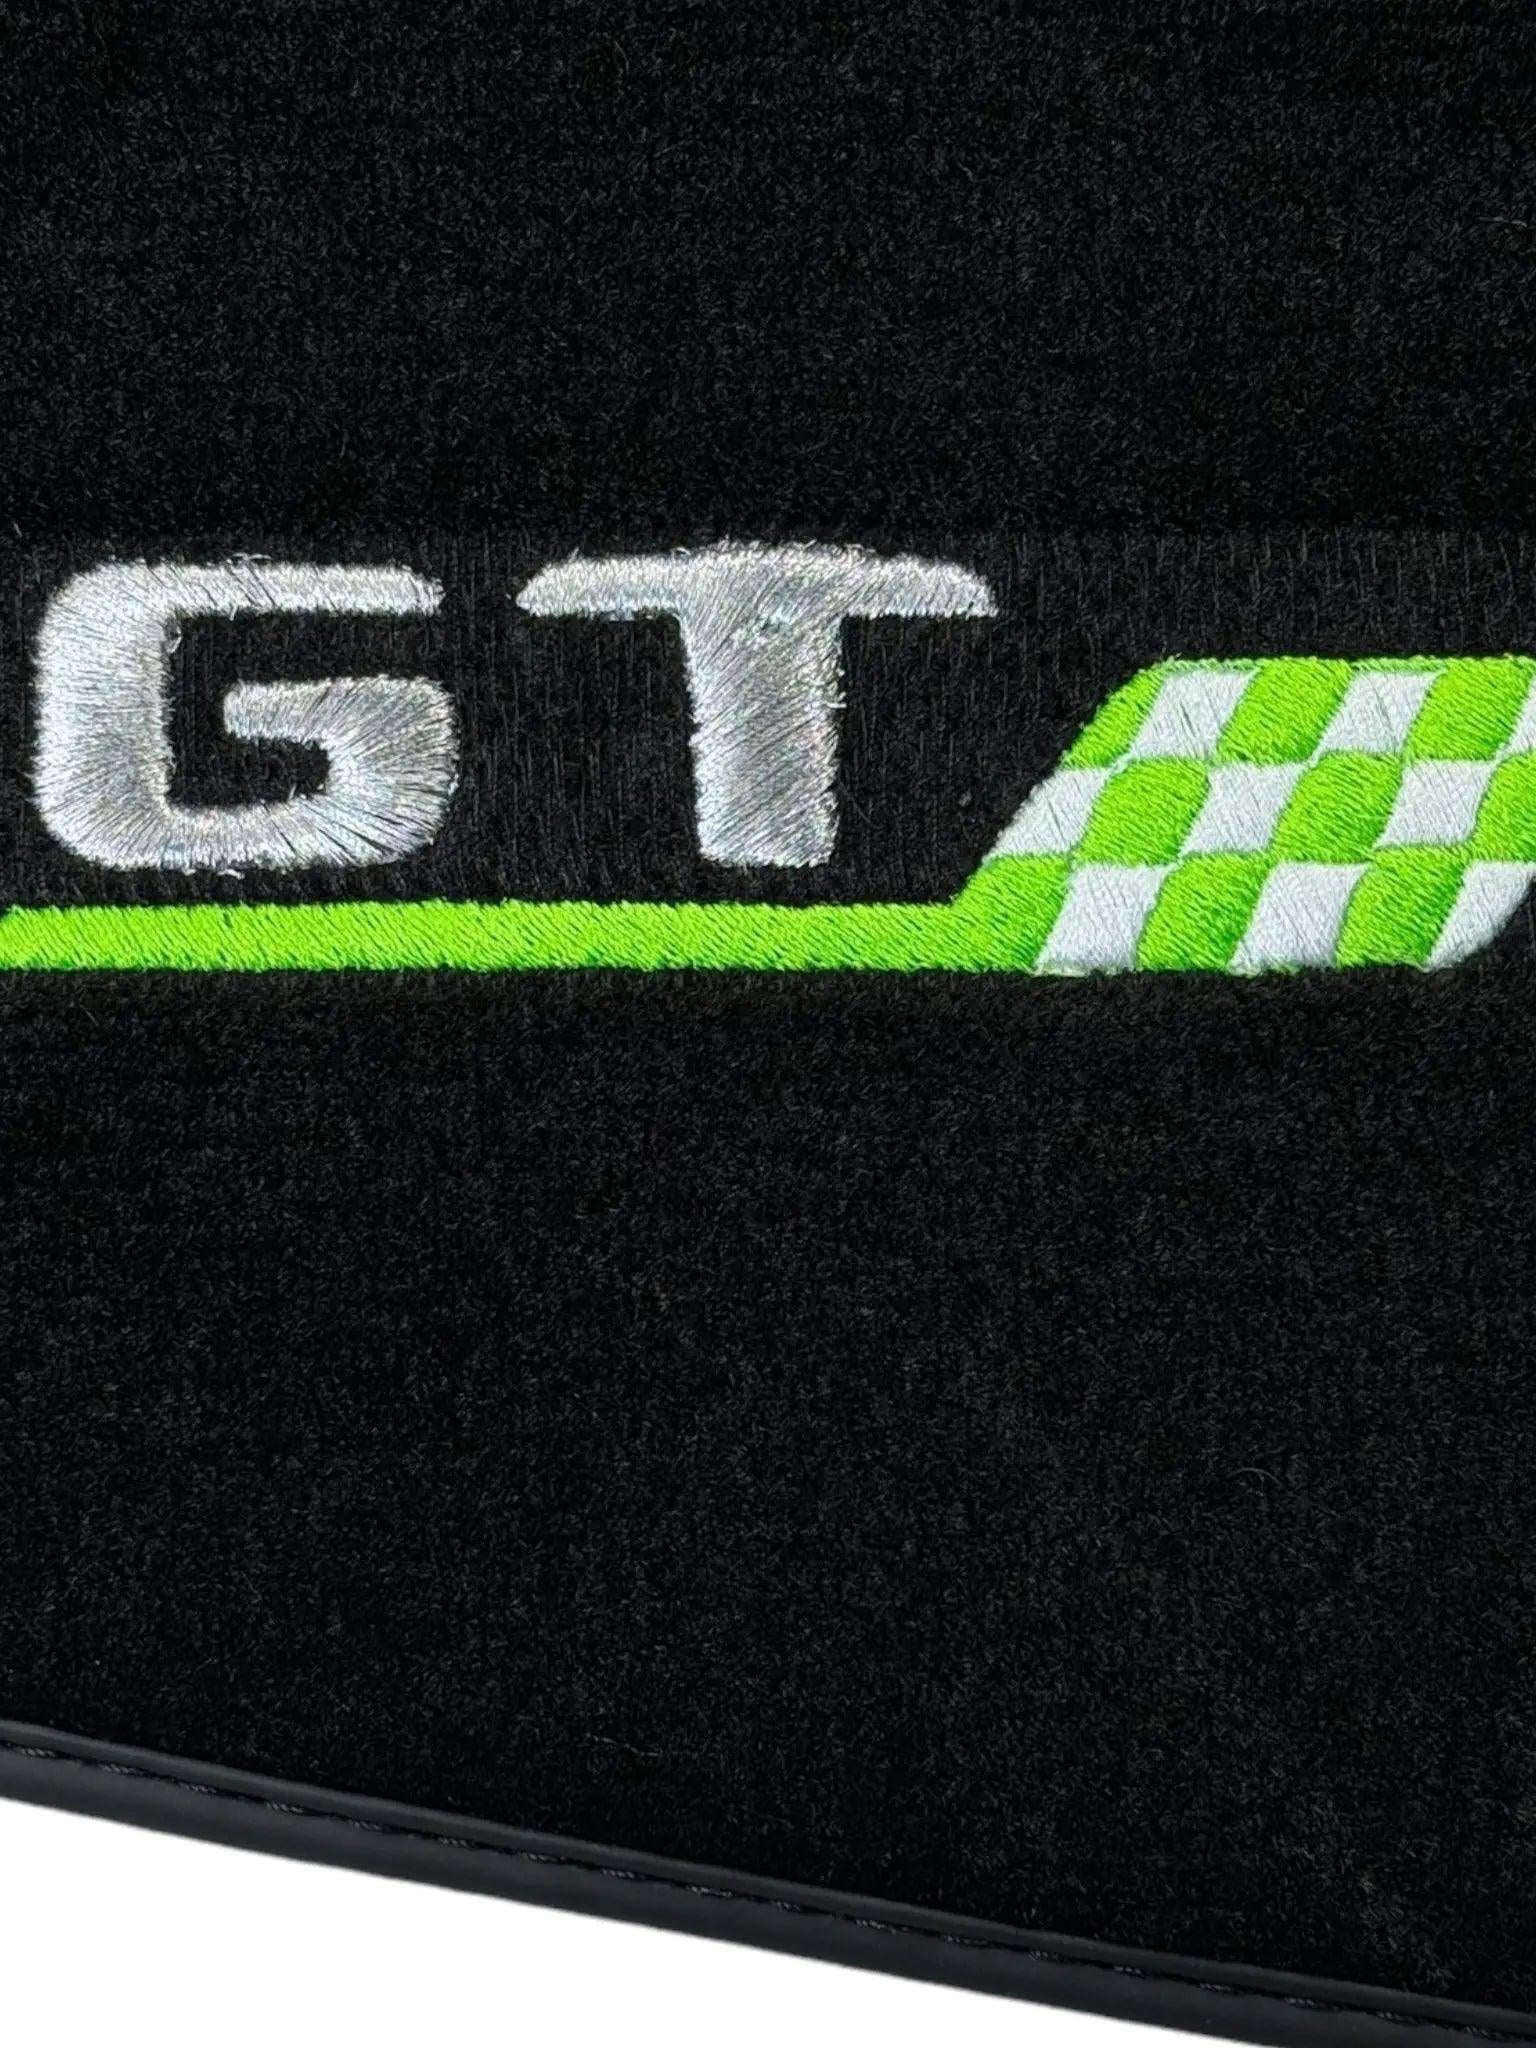 Floor Mats For Mercedes-Benz Amg Gt Green Flag Autowin Brand